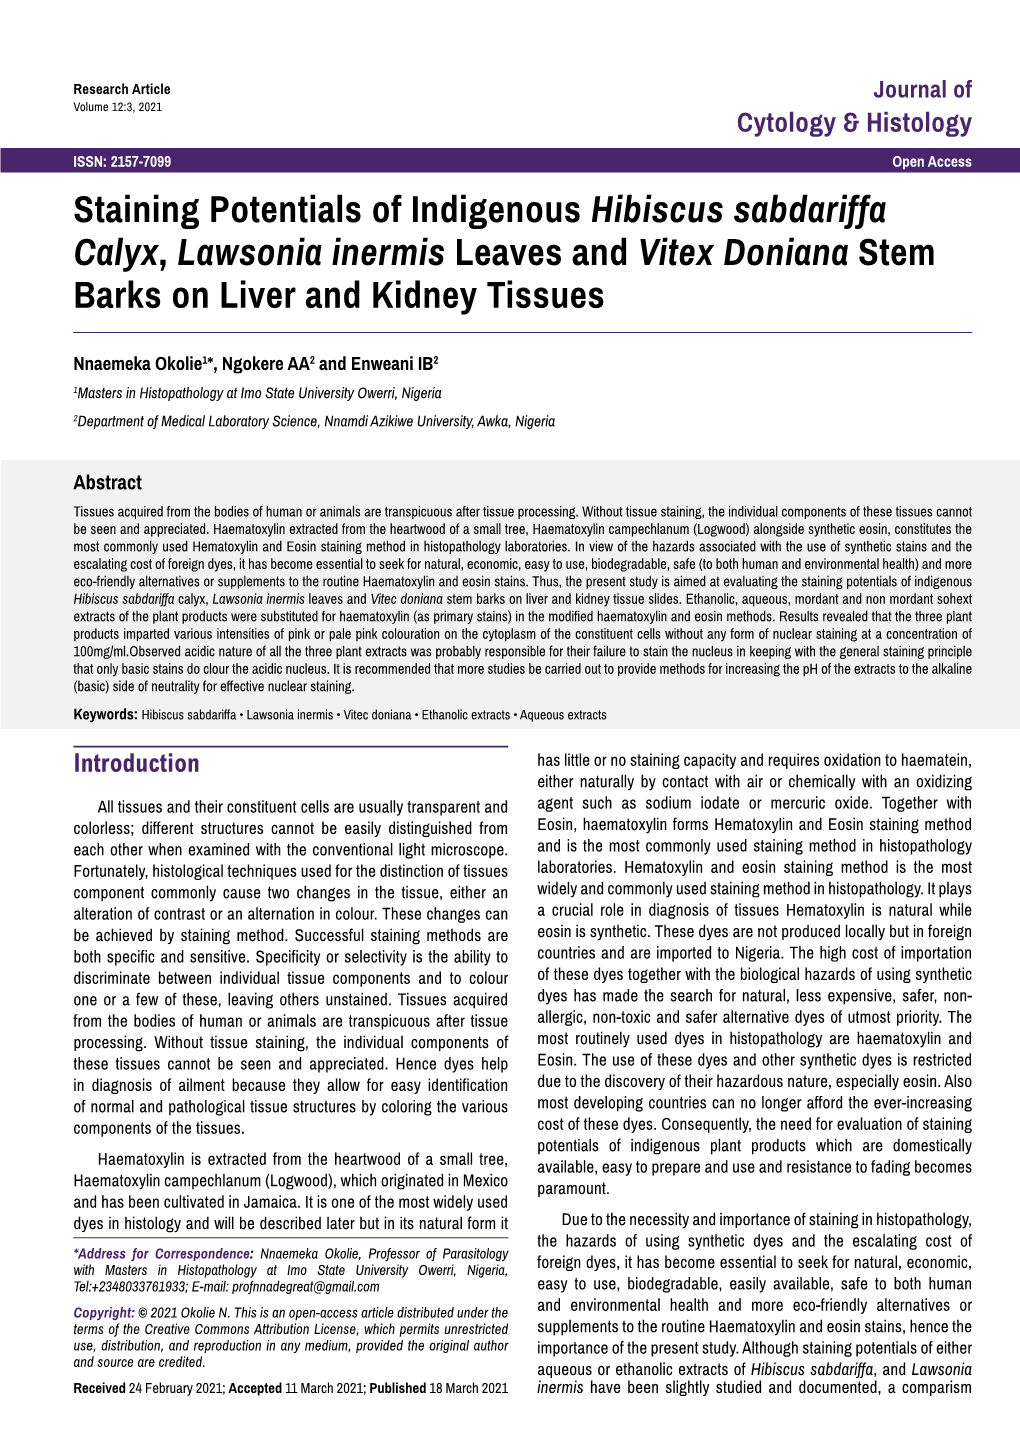 Epidemic Scenario and Journey of New Coronavirus COVID-19